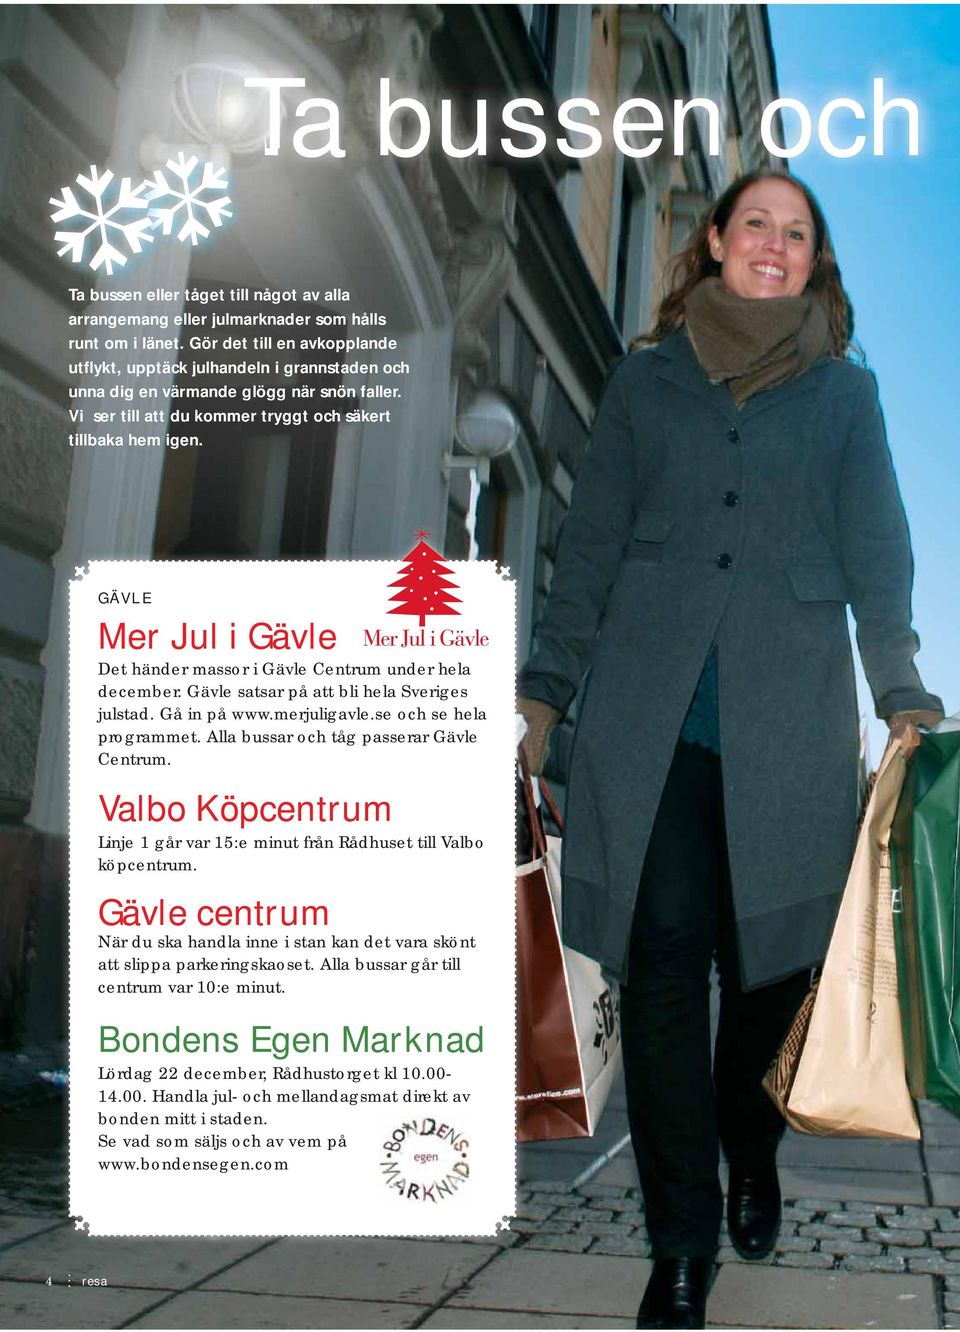 GÄVLE Mer Jul i Gävle Det händer massor i Gävle Centrum under hela december. Gävle satsar på att bli hela Sveriges julstad. Gå in på www.merjuligavle.se l och se hela programmet.